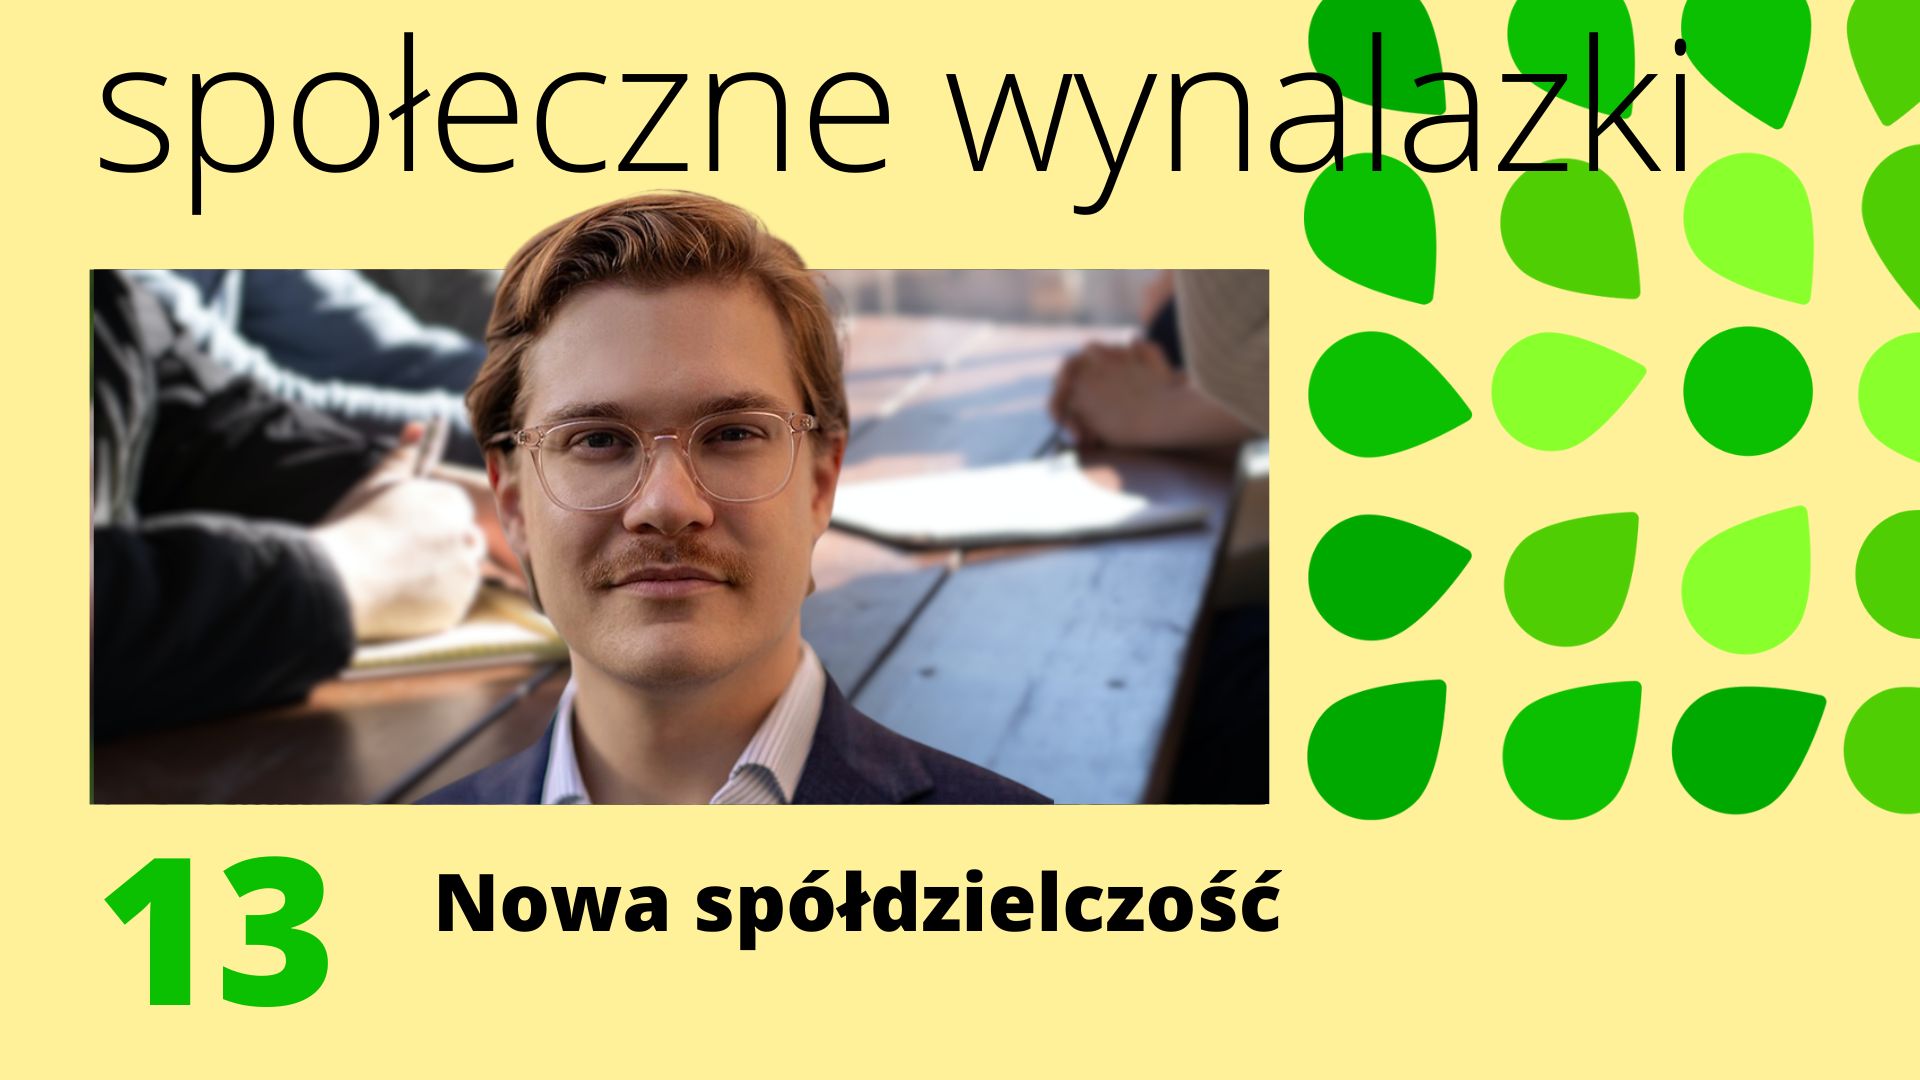 Okładka 13 odcinka podcastu Społeczne Wynalazki "Nowa spółdzielczość". Twarz gościa - Jana Zygmuntowskiego.